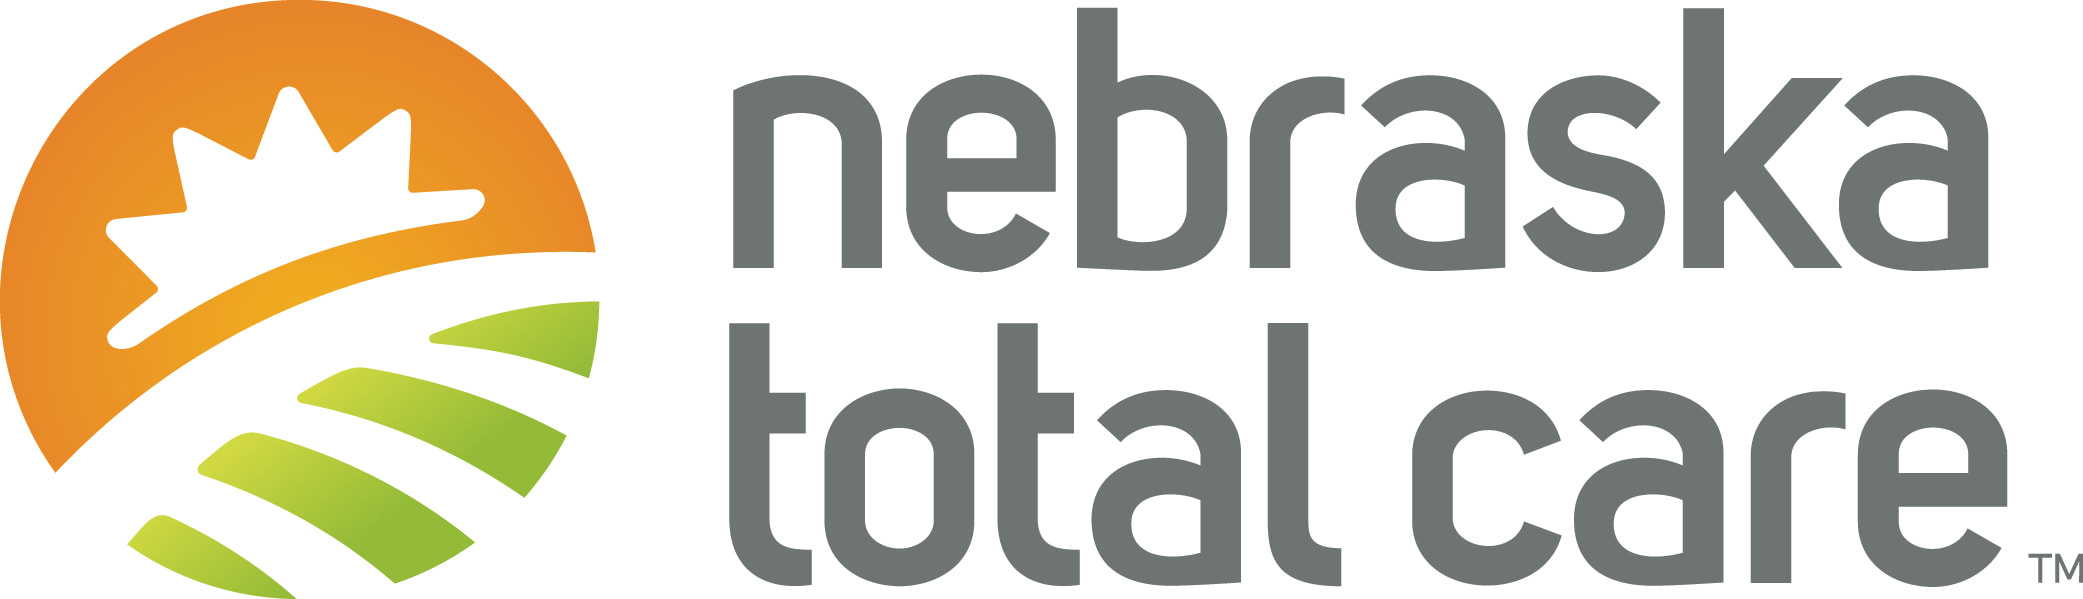 Nebraska Total Care logo